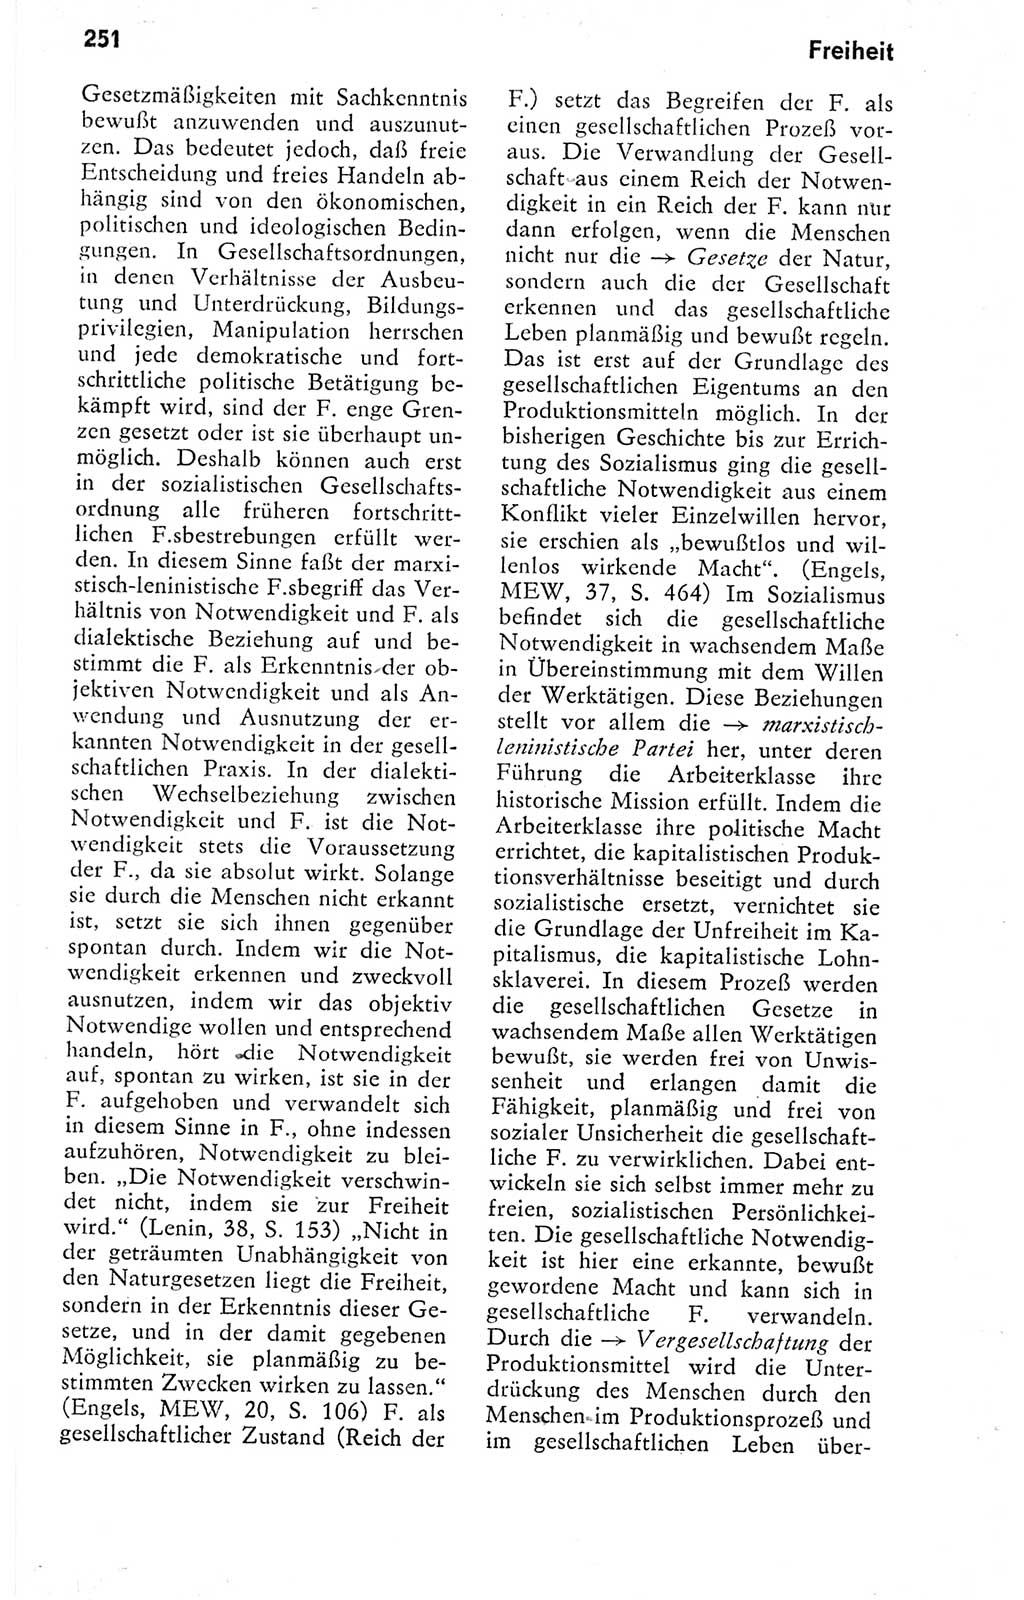 Kleines politisches Wörterbuch [Deutsche Demokratische Republik (DDR)] 1978, Seite 251 (Kl. pol. Wb. DDR 1978, S. 251)